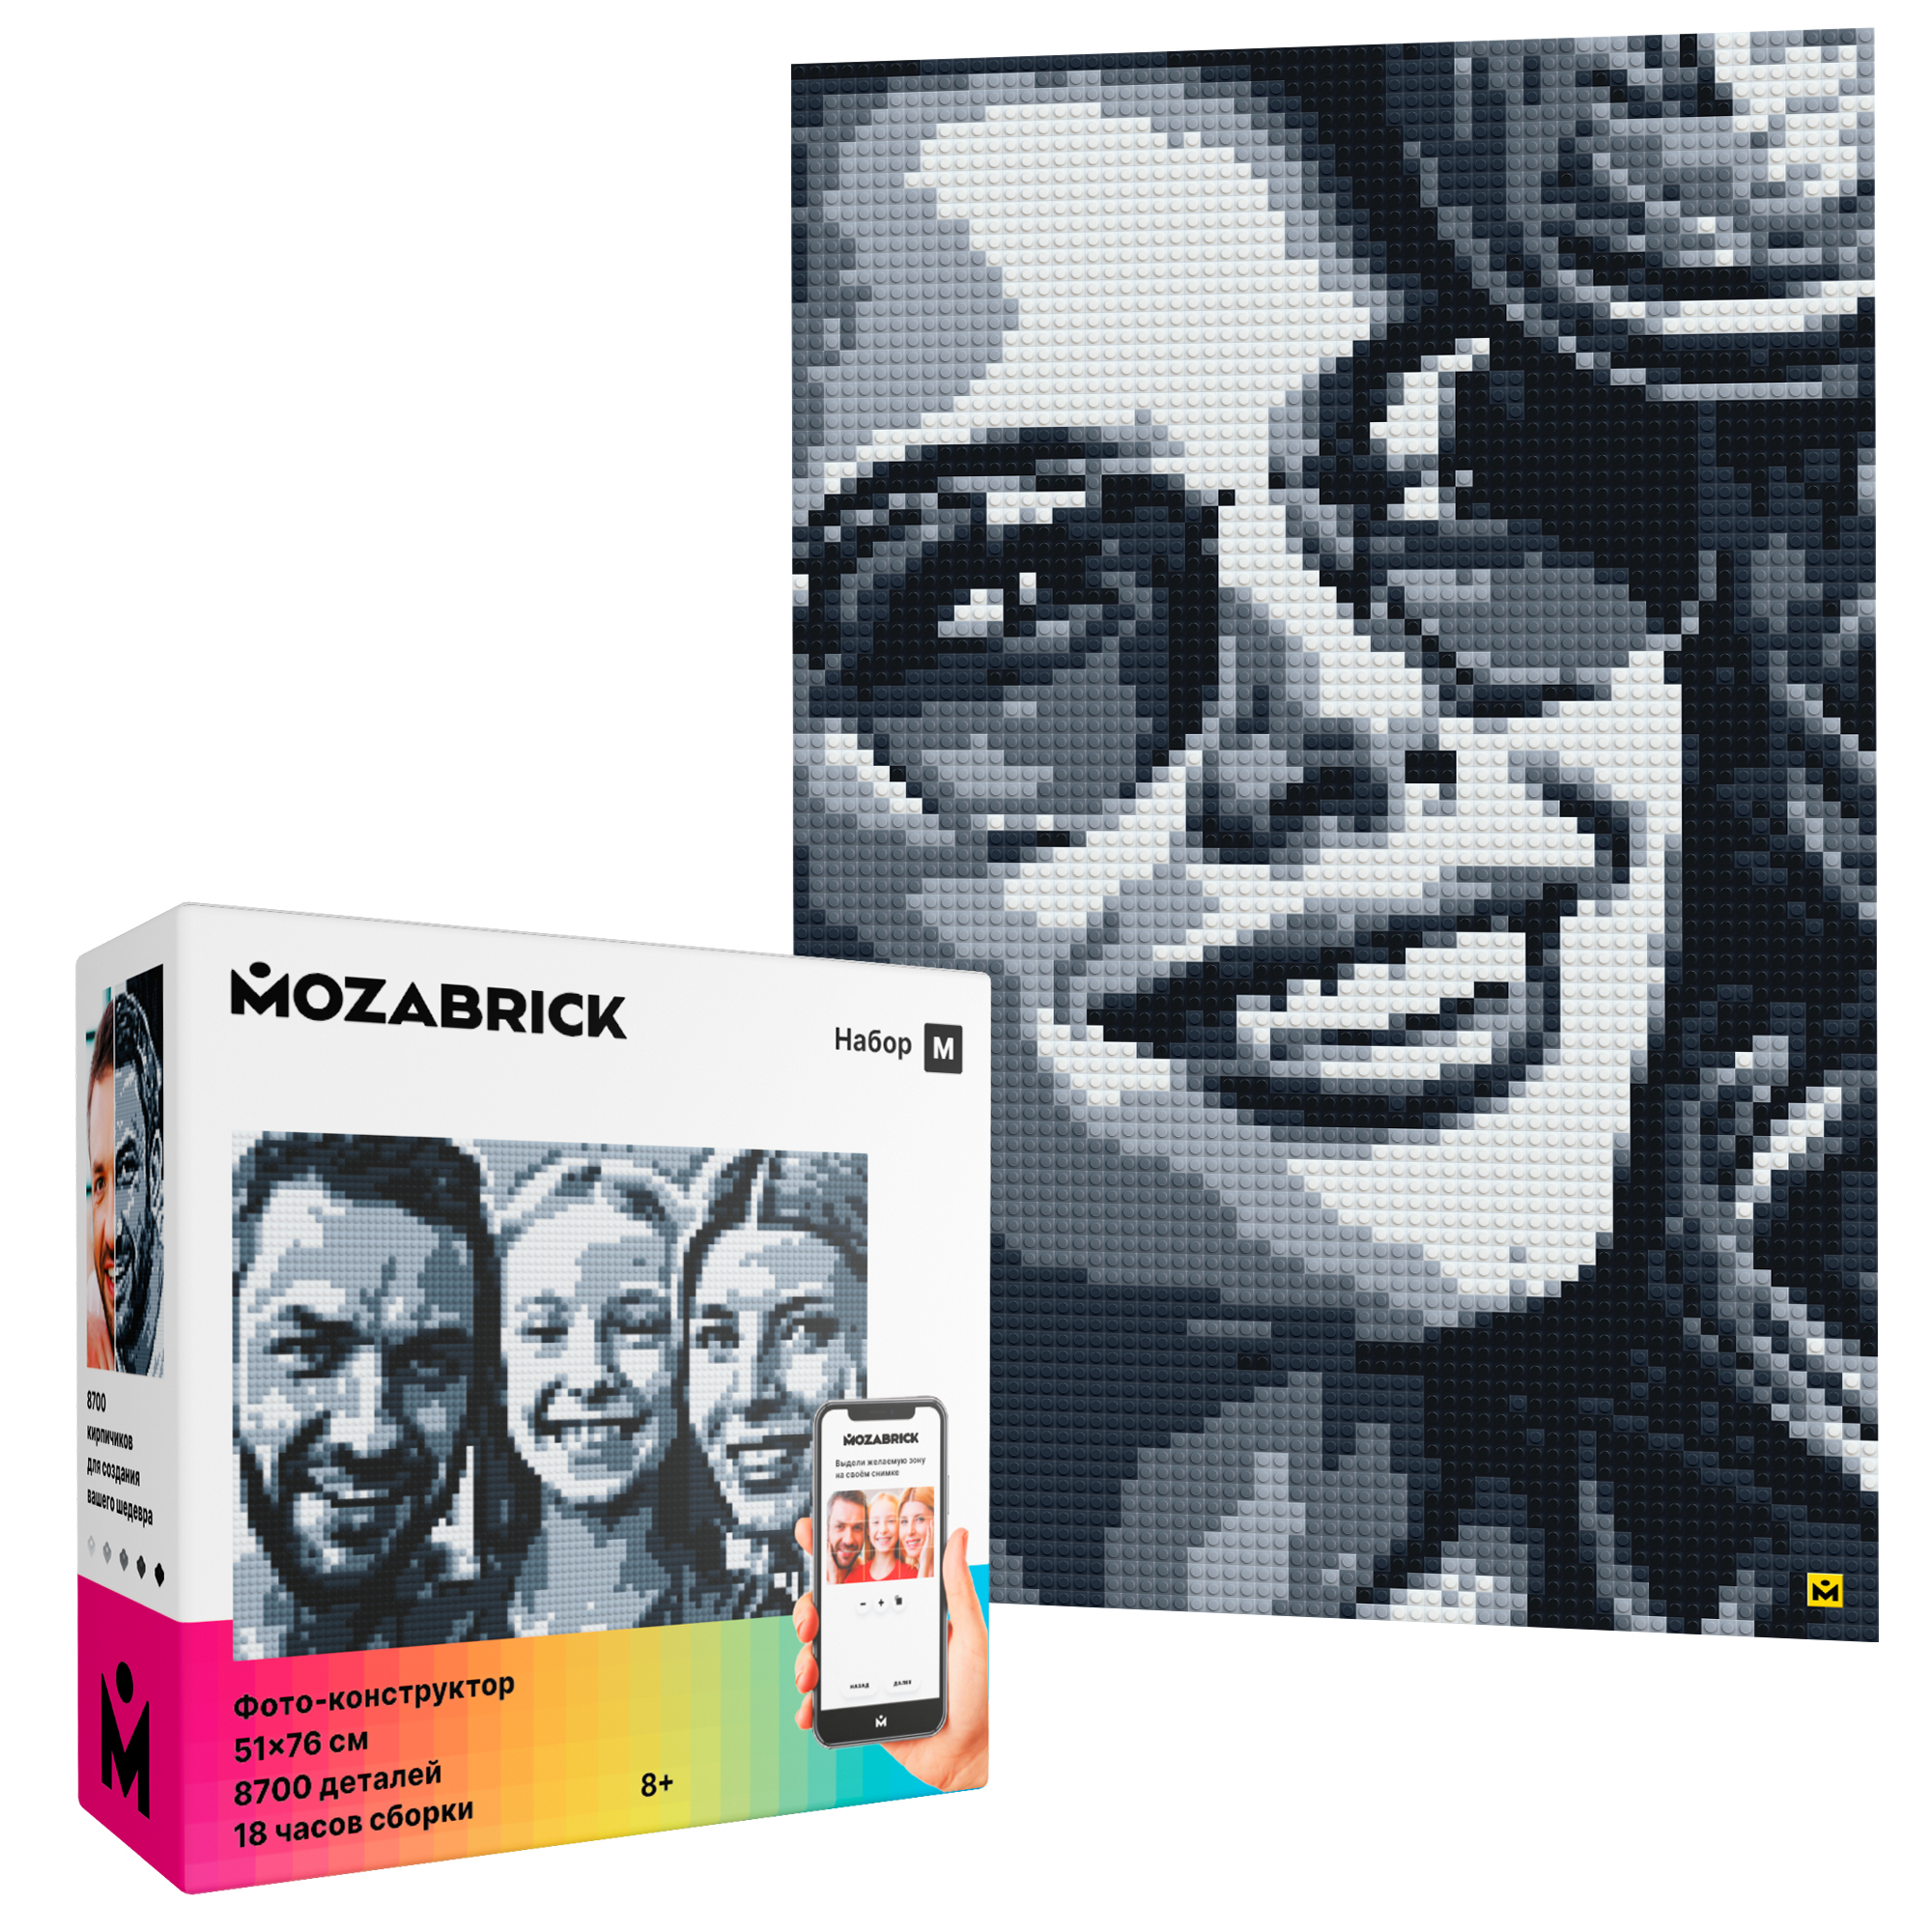 Купить фотоконструктор MOZABRICK Набор M, размер картины 51х76 см, 8753 детали, цены на конструкторы Фото-конструктор MOZABRICK в интернет-магазинах на Мегамаркет